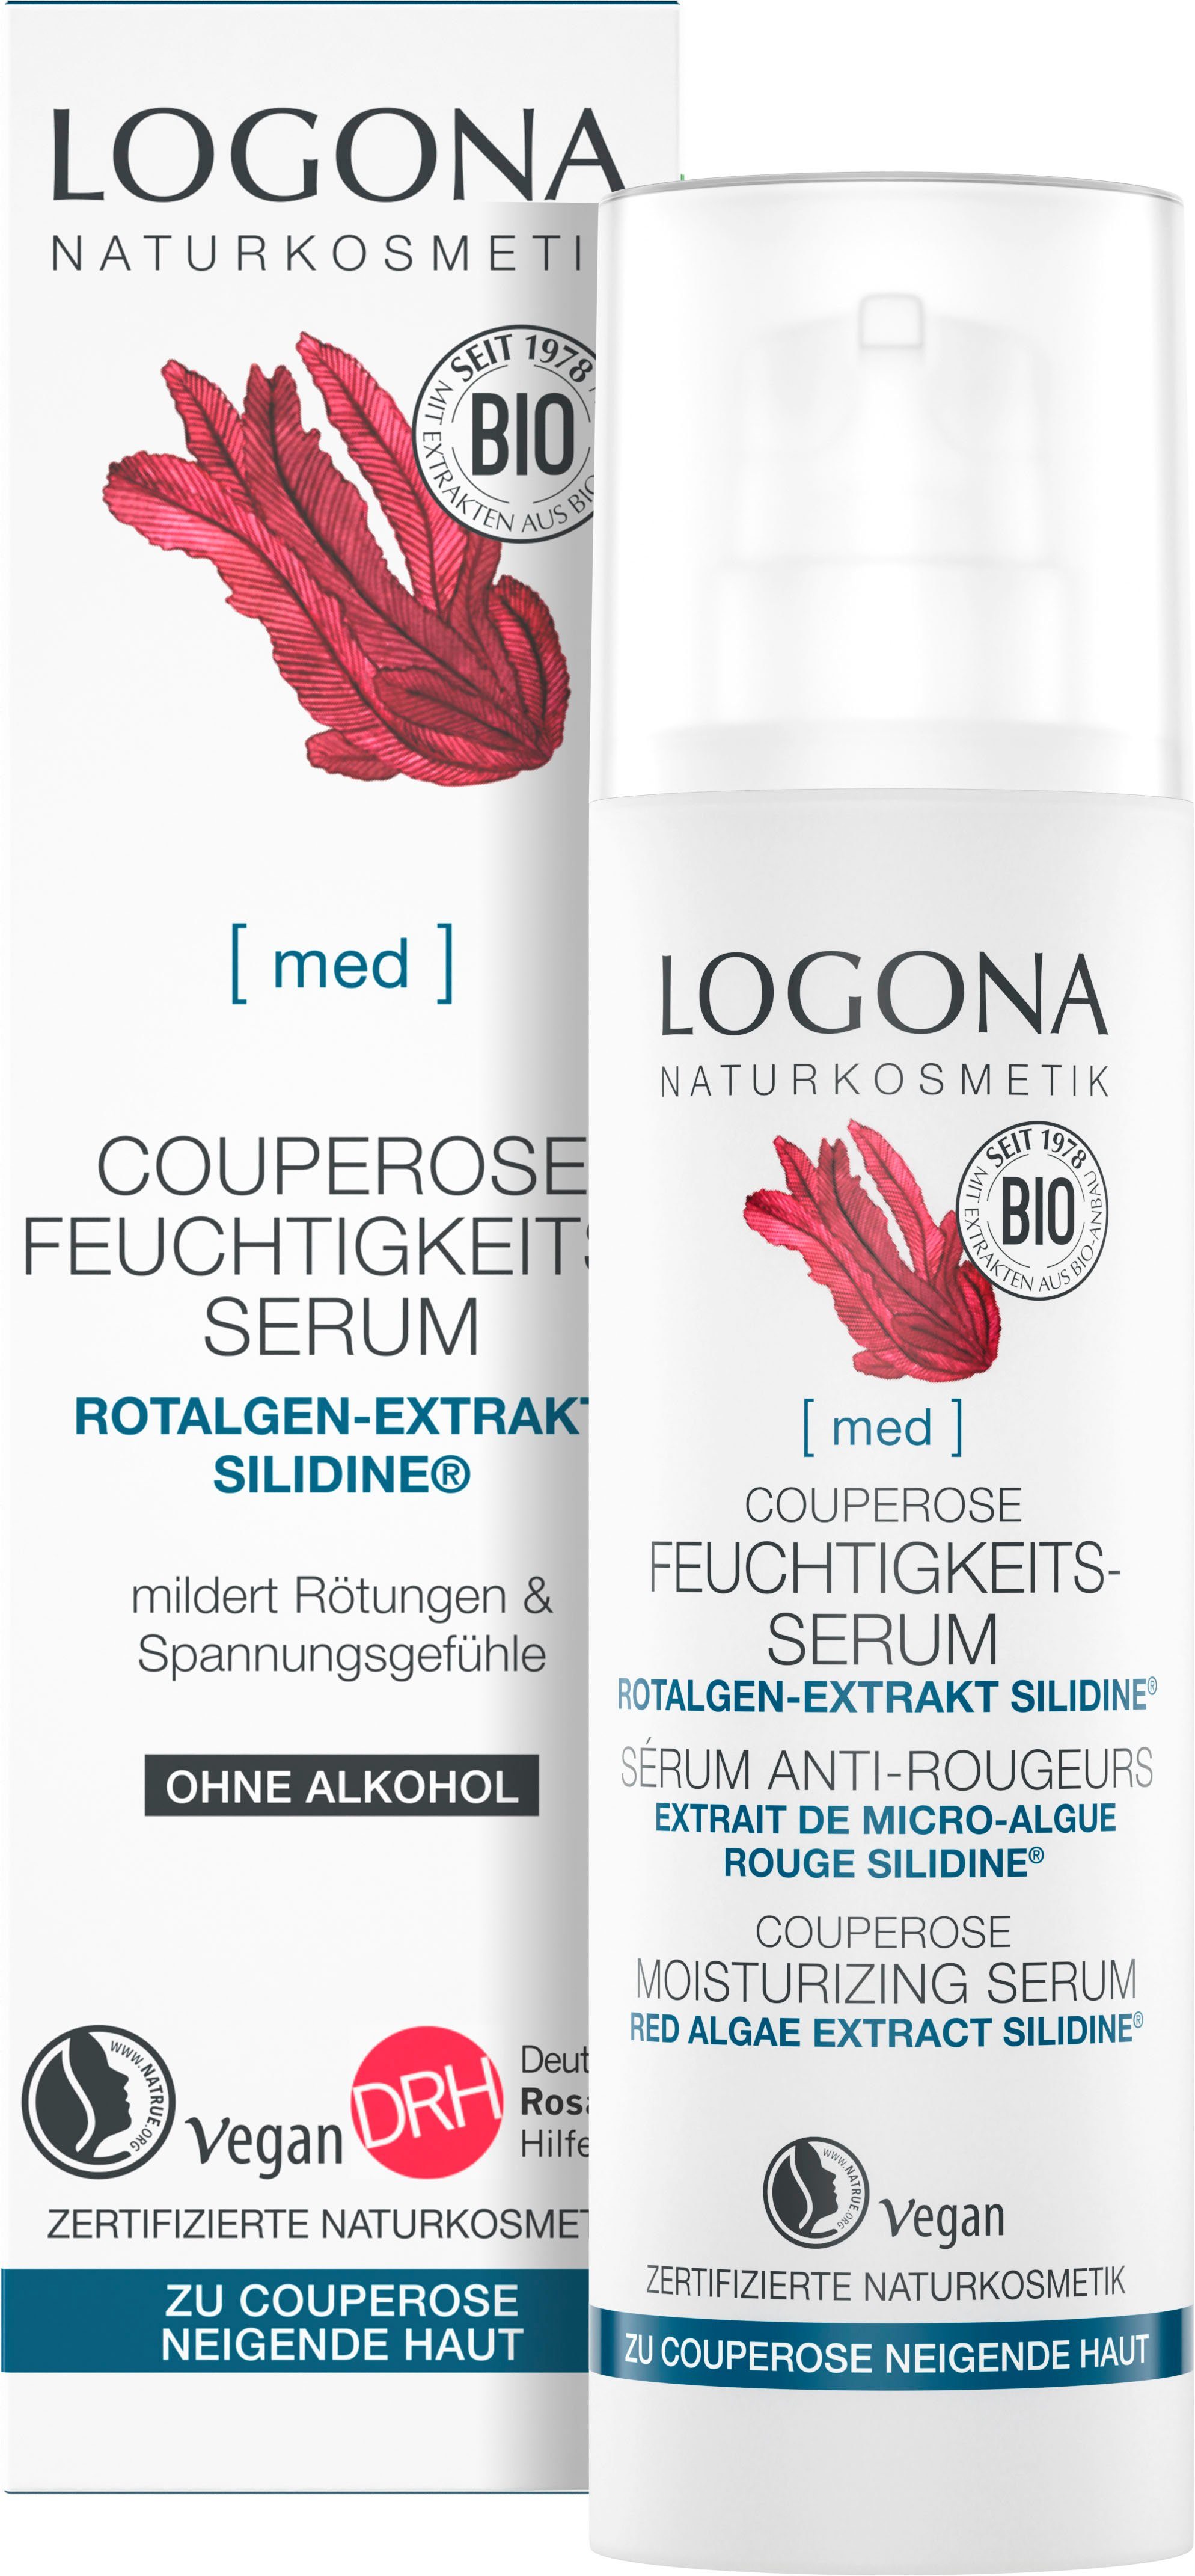 Couperose Logona LOGONA Gesichtsserum [med] Feuchtigkeits-Serum